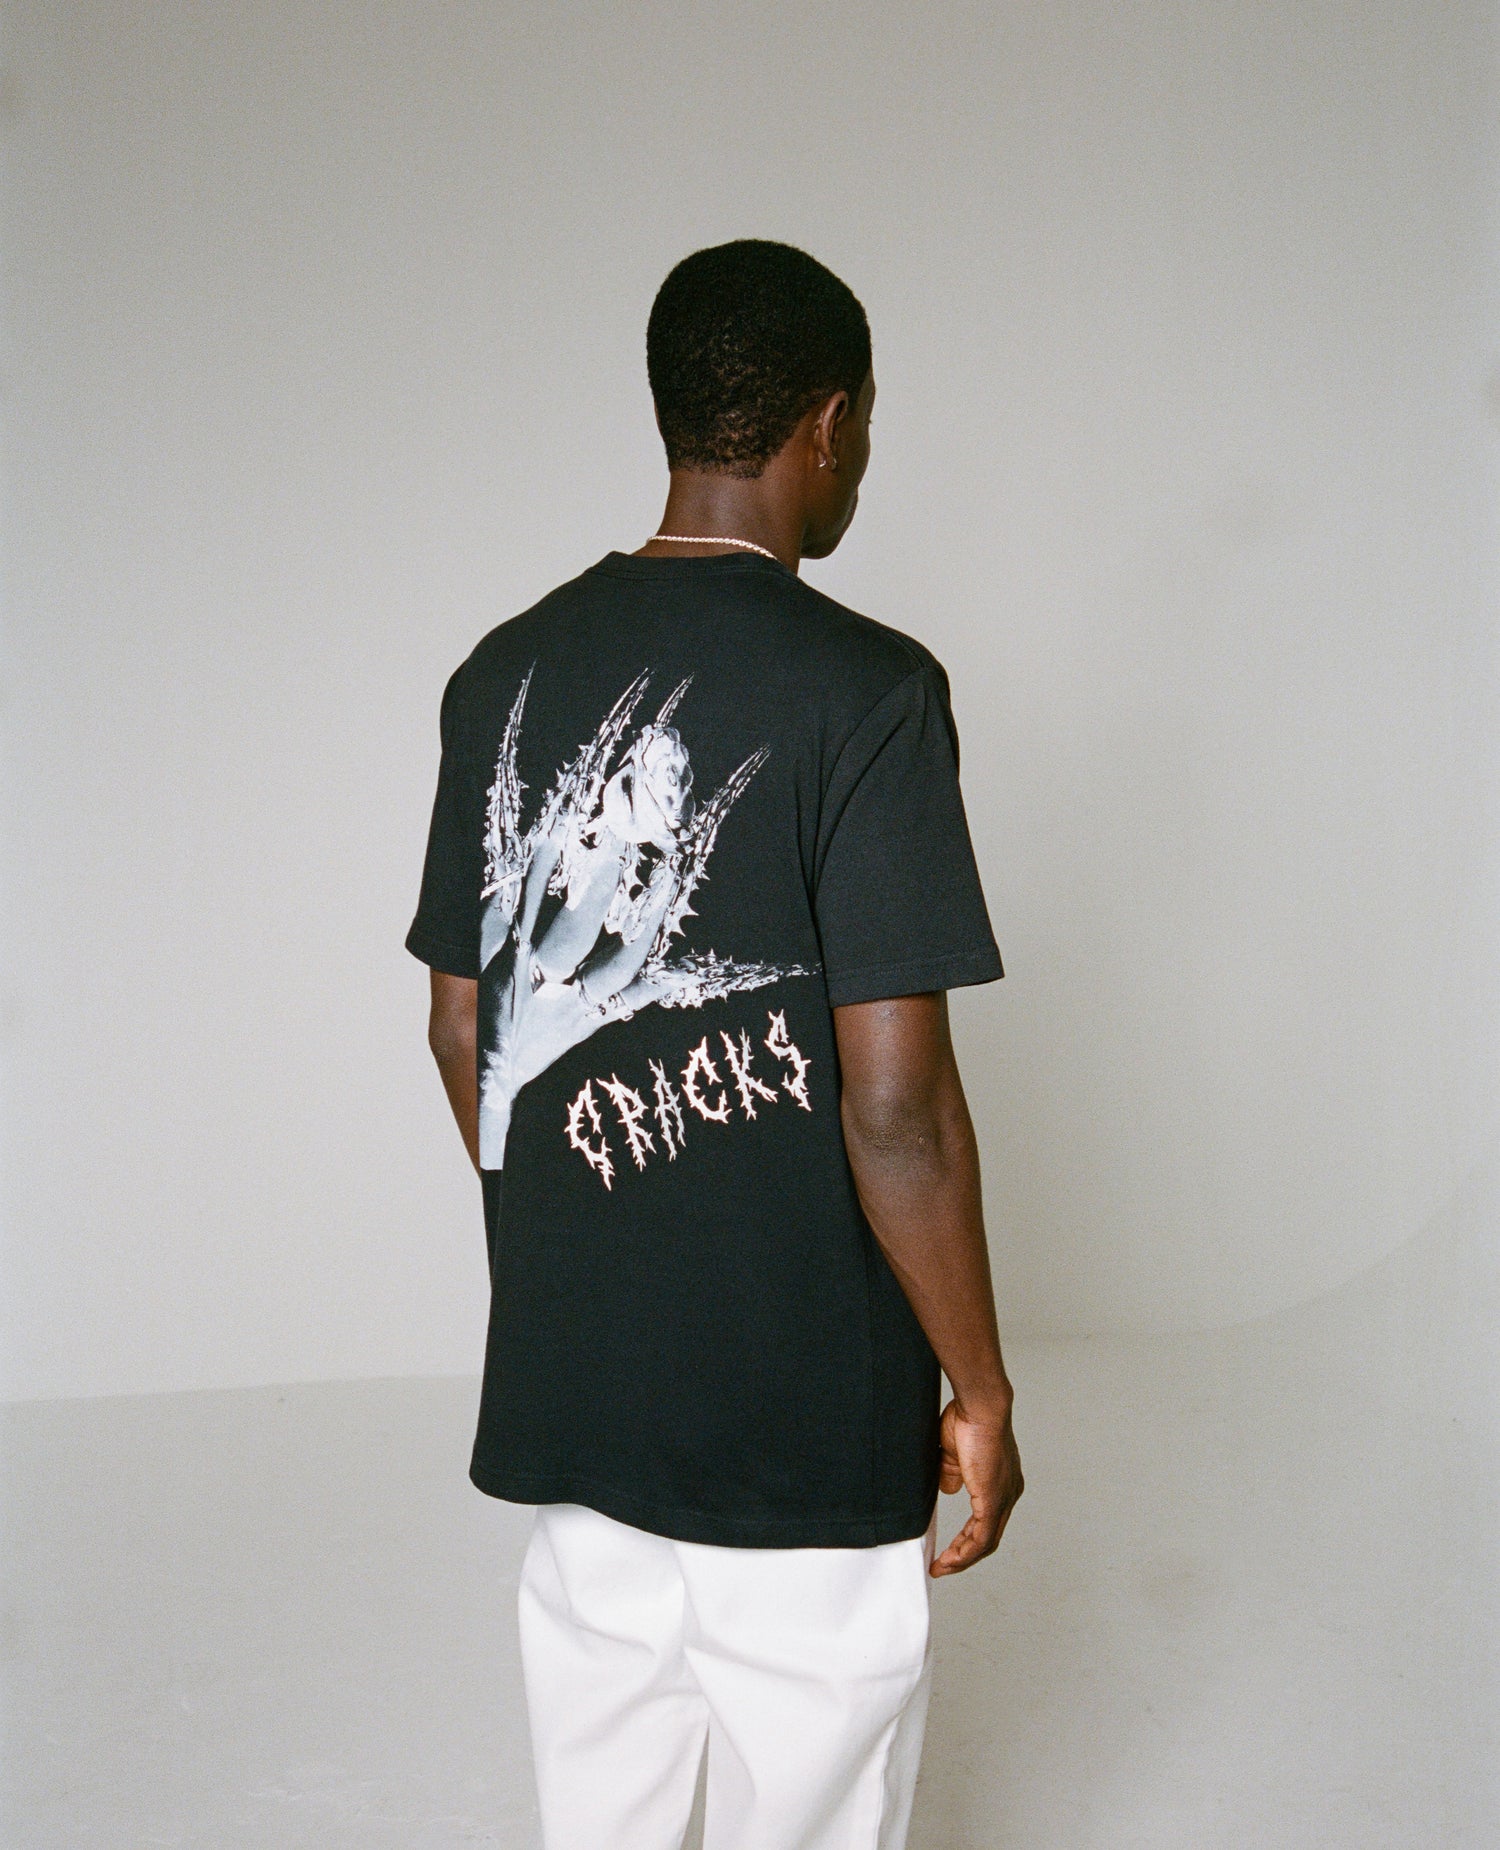 Patta Soundsystem x Mila V Cracks T-Shirt + Vinyl (Black)